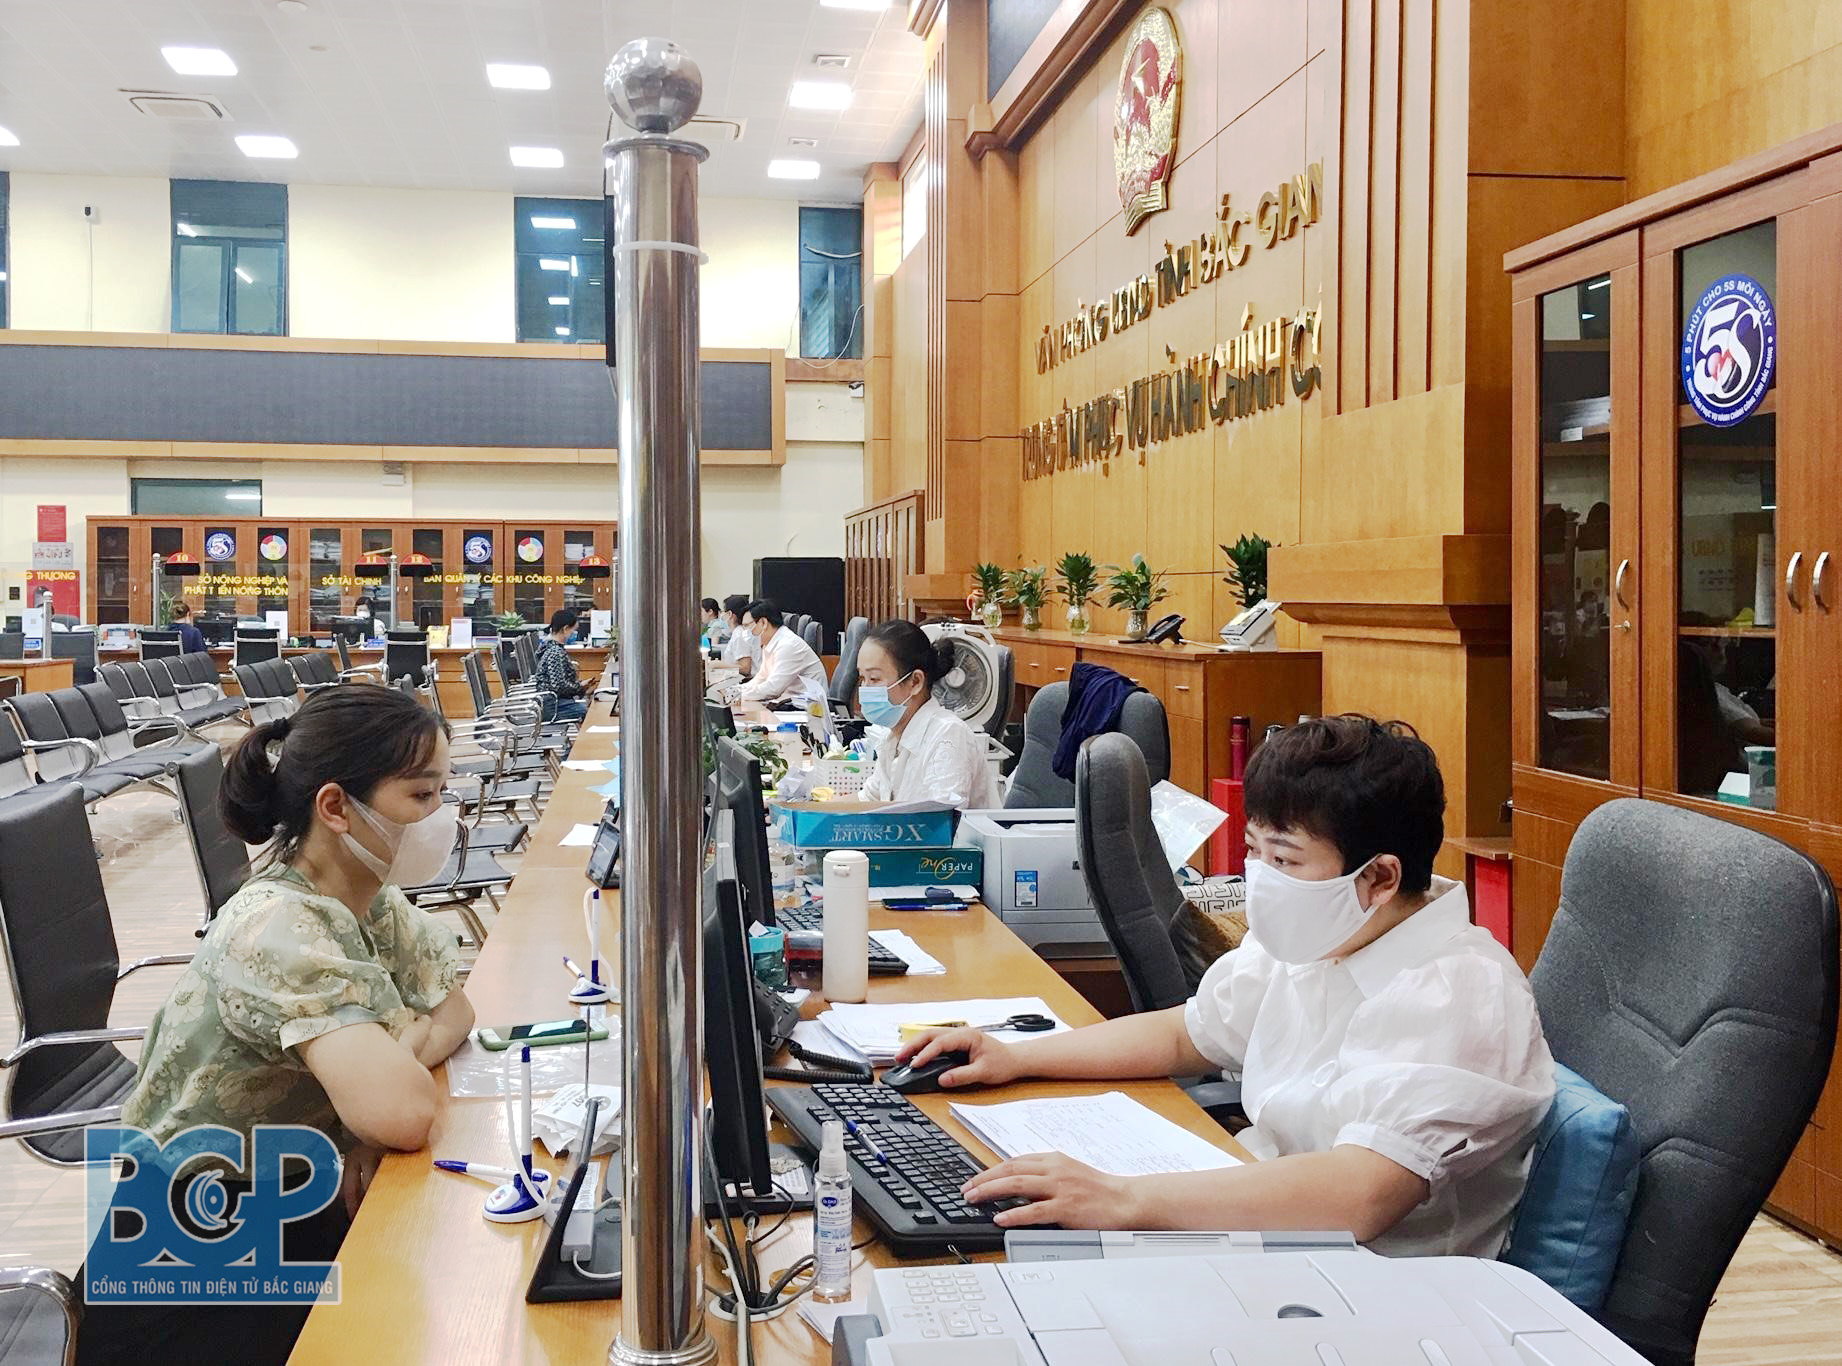 Trung tâm Phục vụ hành chính công tỉnh Bắc Giang: Hồ sơ trả kết quả trước hạn đạt 91%